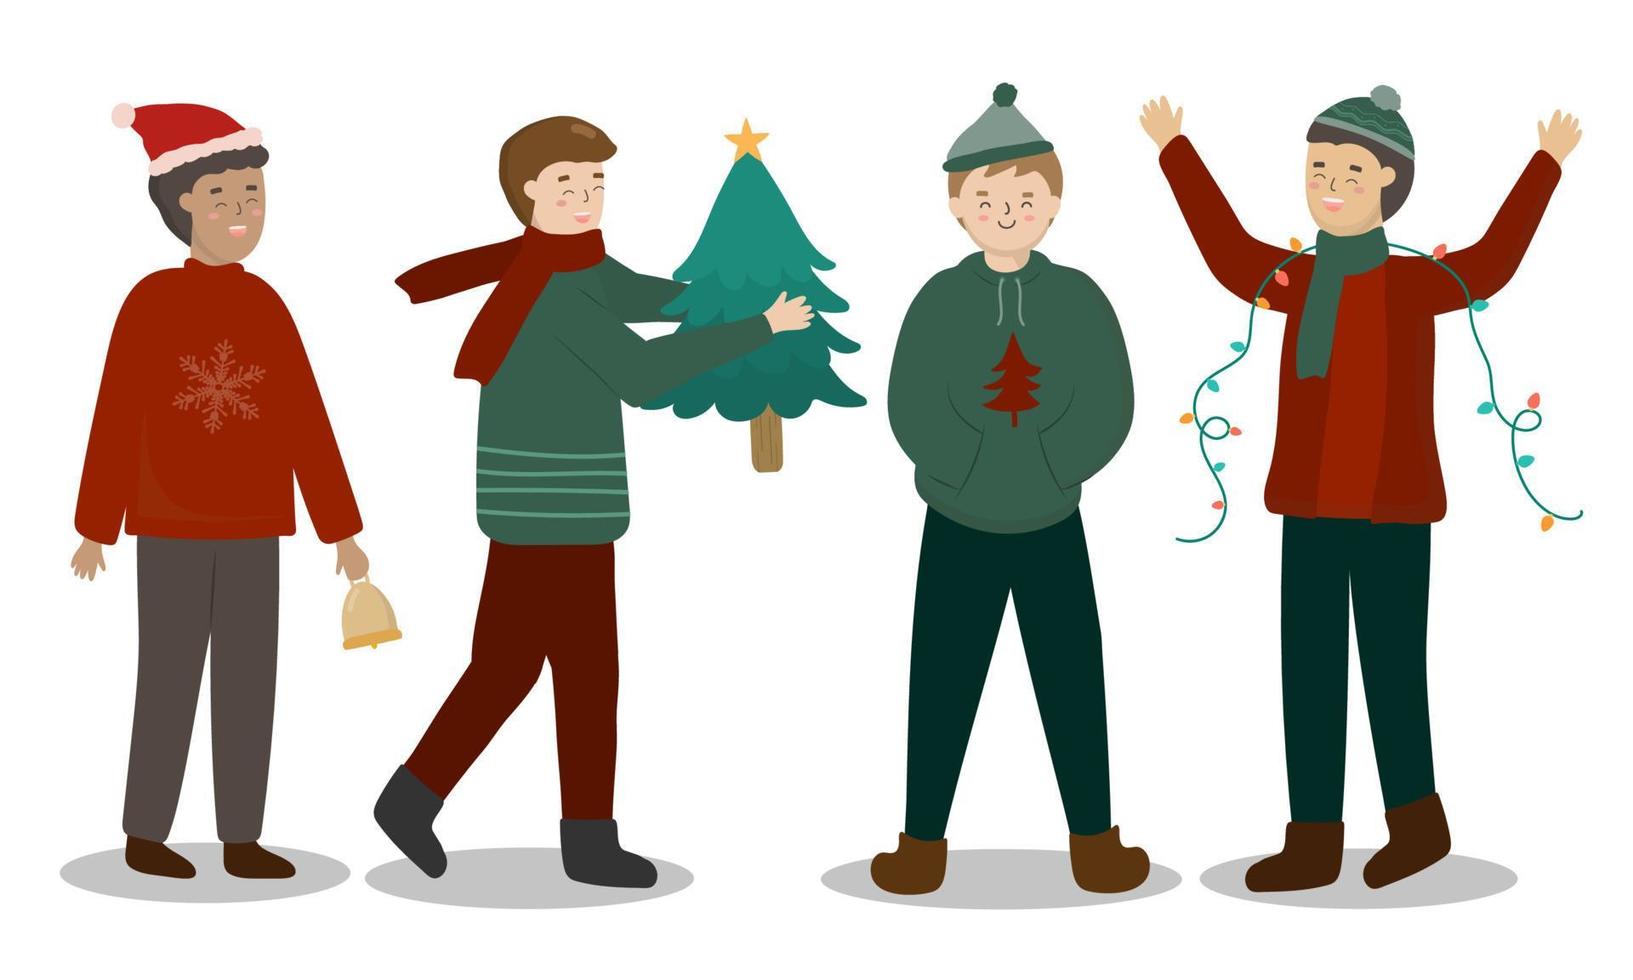 vrienden in verschillende activiteiten met fashion sweater design element voor uitnodigingskaart, feest, nieuwjaar, kerstmis. vector